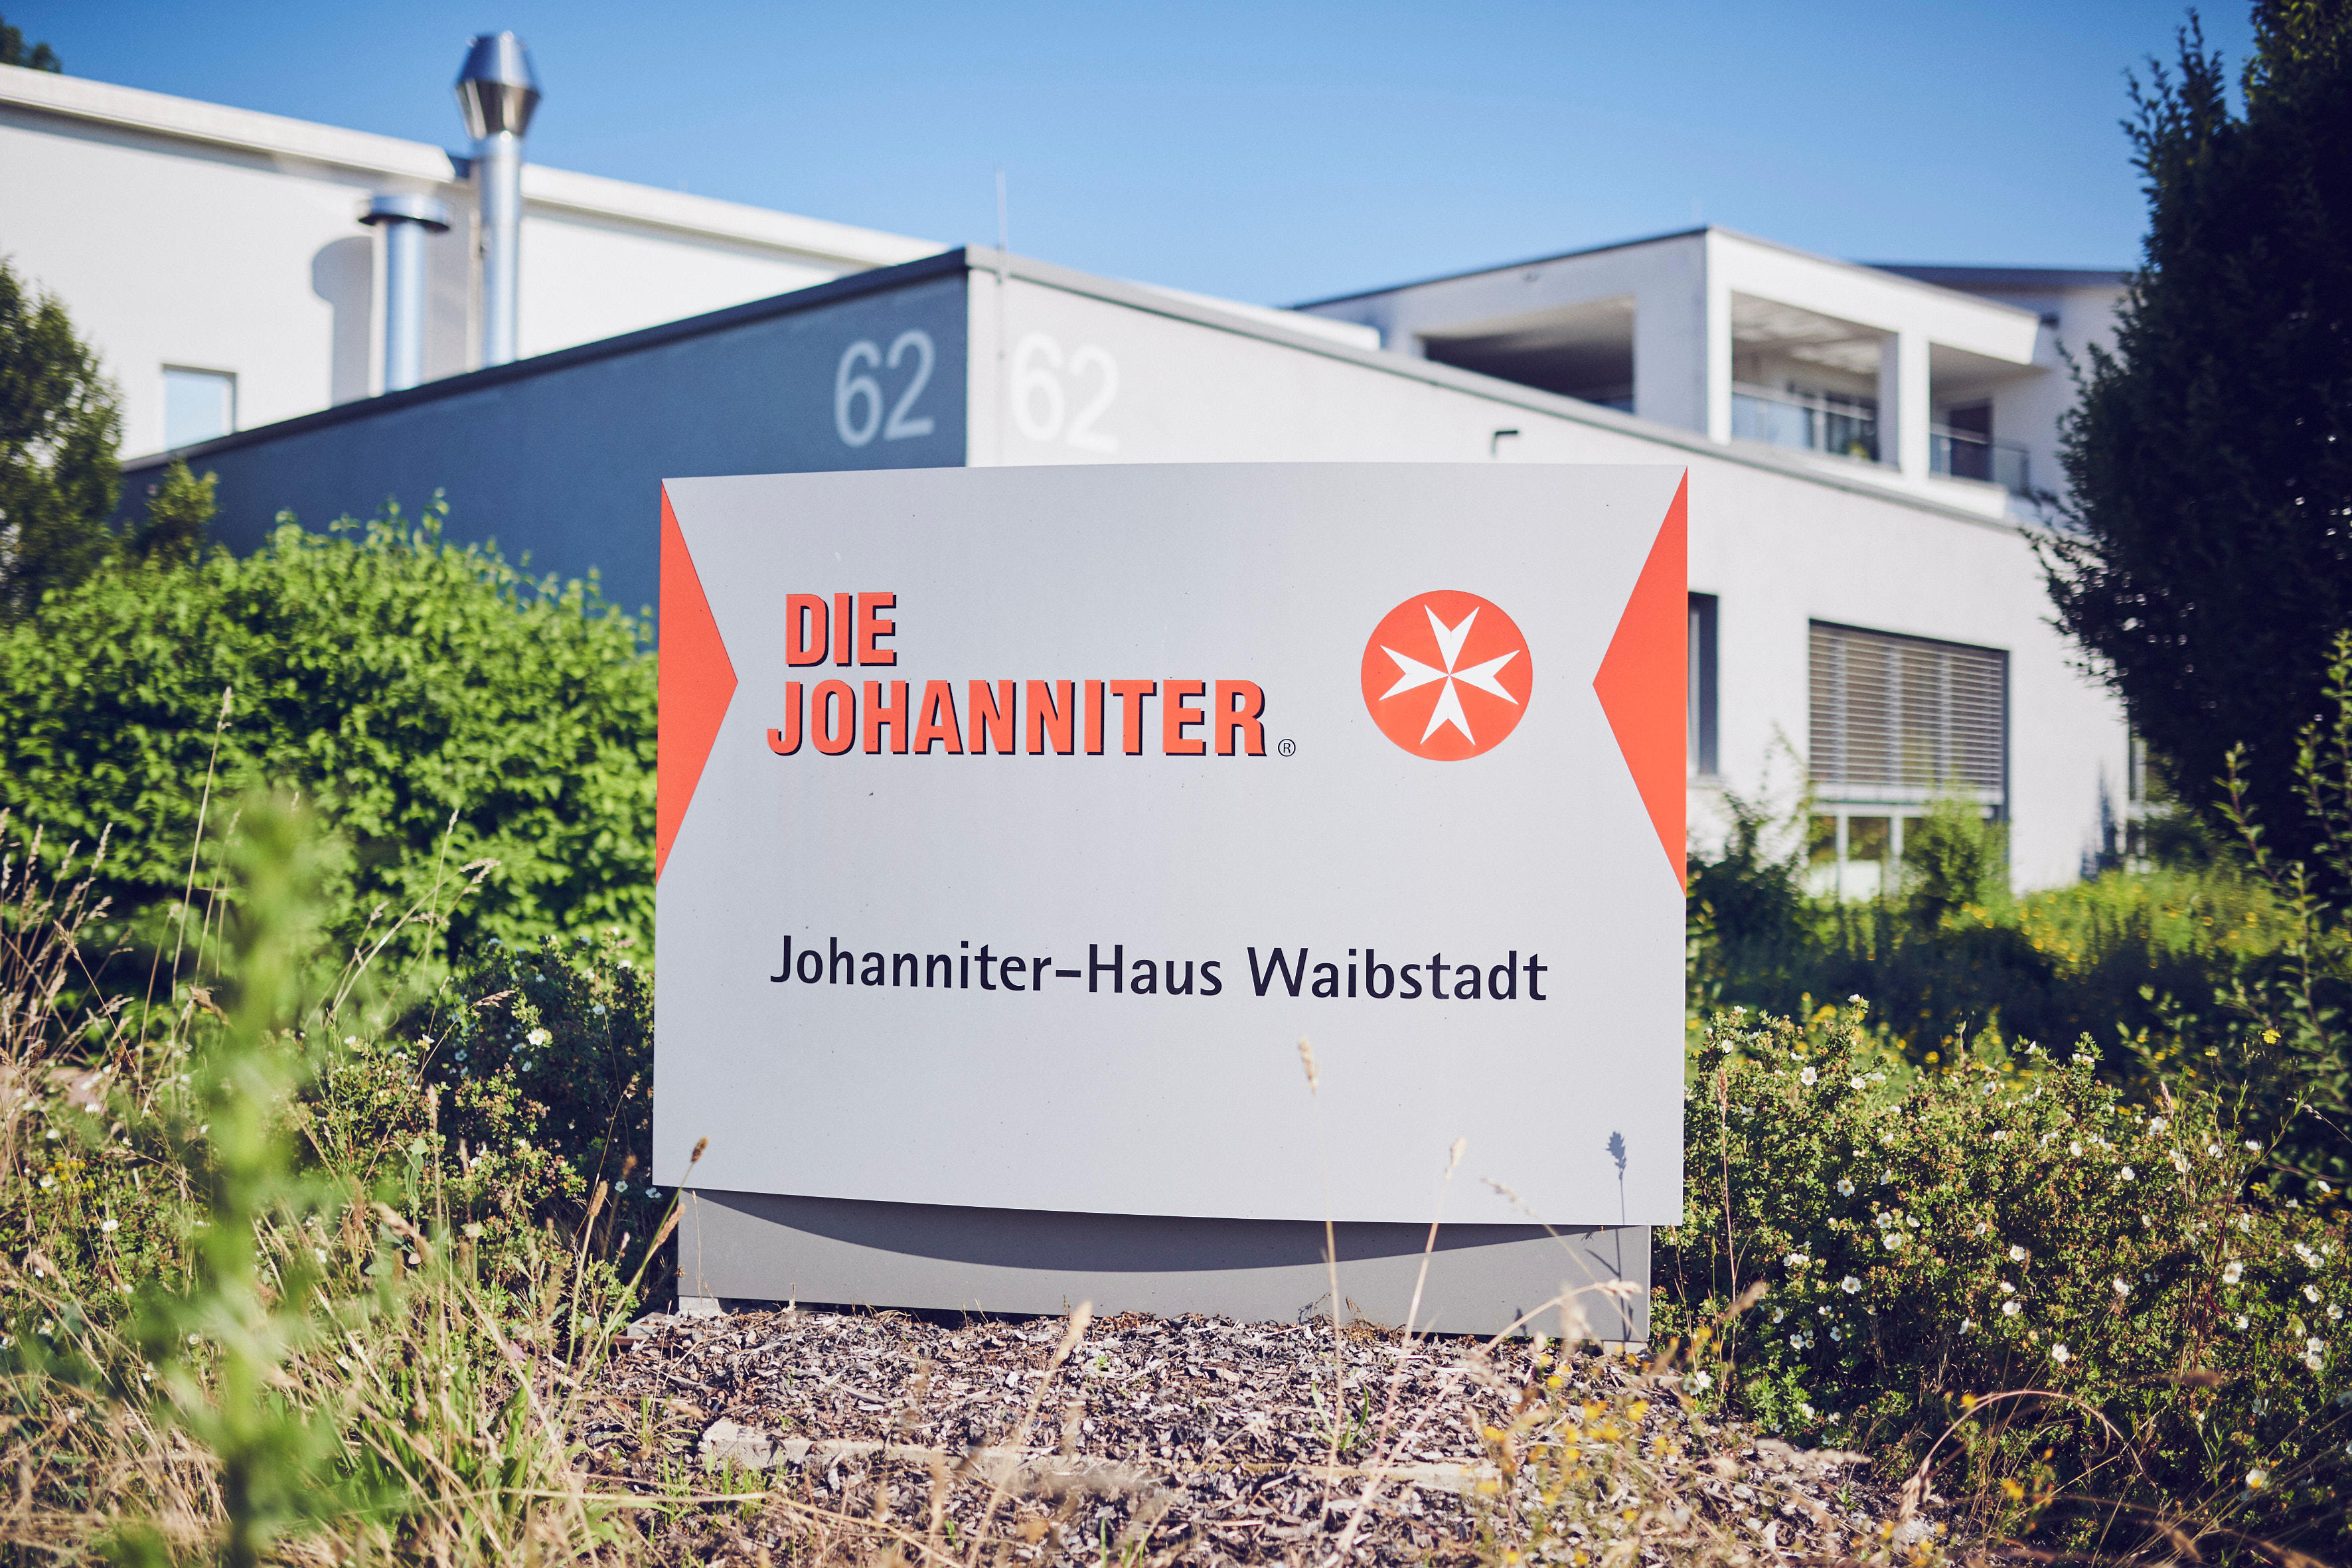 Kundenbild groß 3 Johanniter-Haus Waibstadt